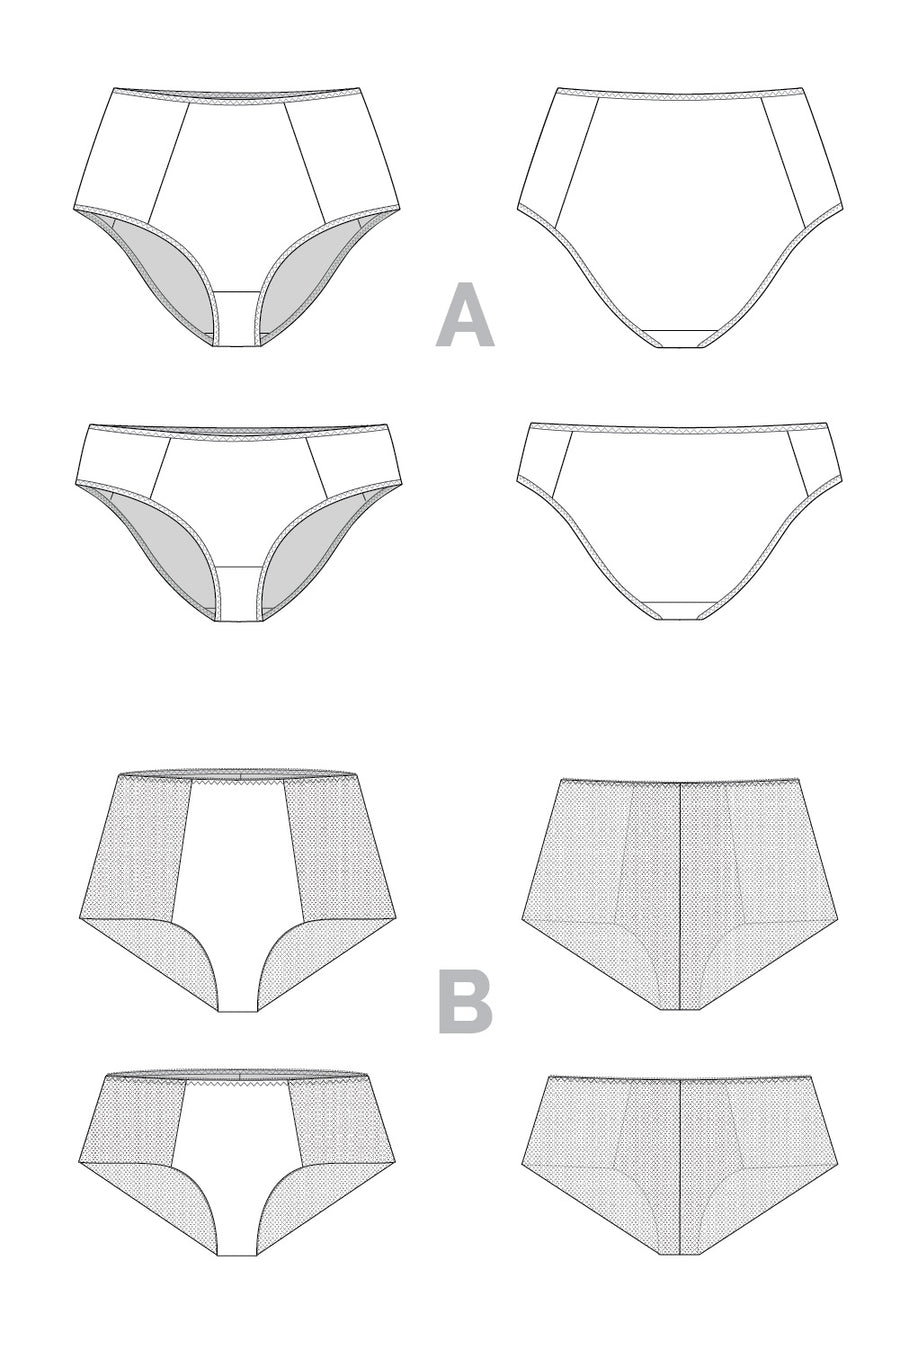 Anais Undies Pattern | Bikini + High Waisted + Seamless Panty Pattern | Closet Core Patterns